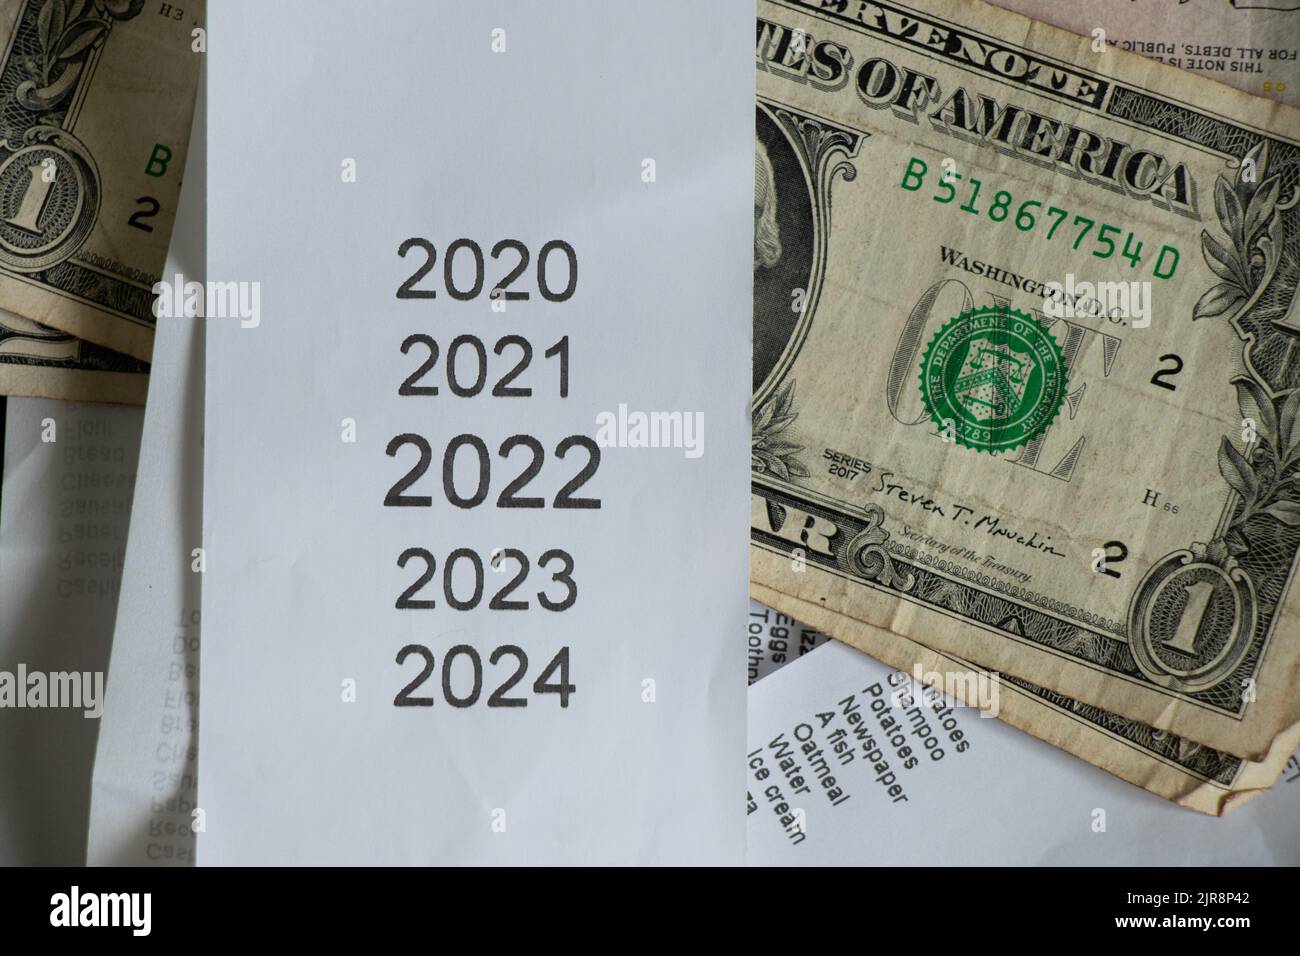 Liste des années 2020 2021 2022 2023 sur la caisse qui se trouve près des dollars américains, le reçu des ventes et l'argent, le sujet financier, les revenus en 2022 Banque D'Images